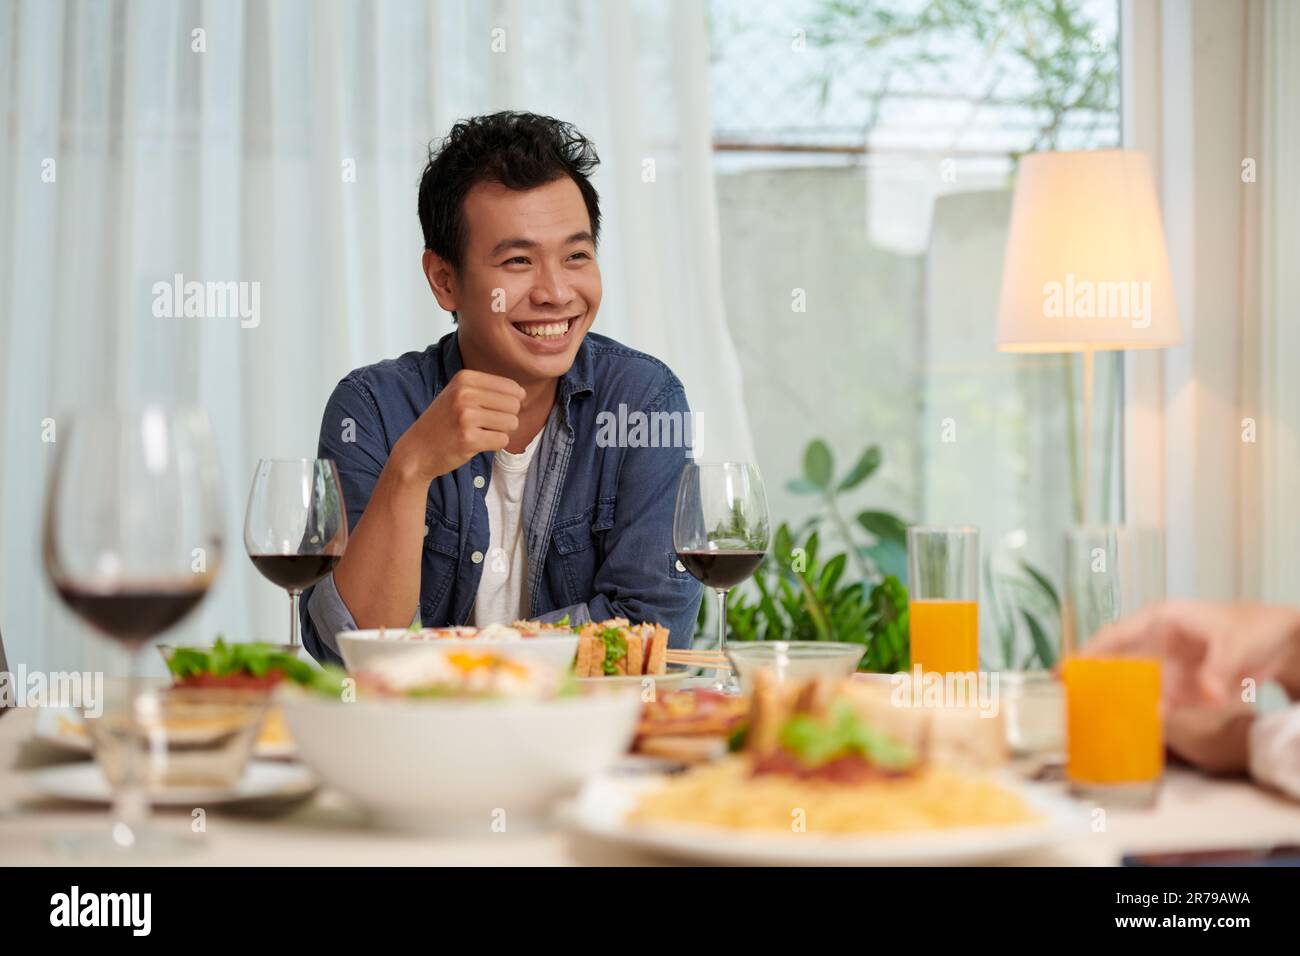 Junger, fröhlicher Asiate in Freizeitkleidung, der beim Abendessen am Serviertisch sitzt und seinen Freund während der Unterhaltung ansieht Stockfoto